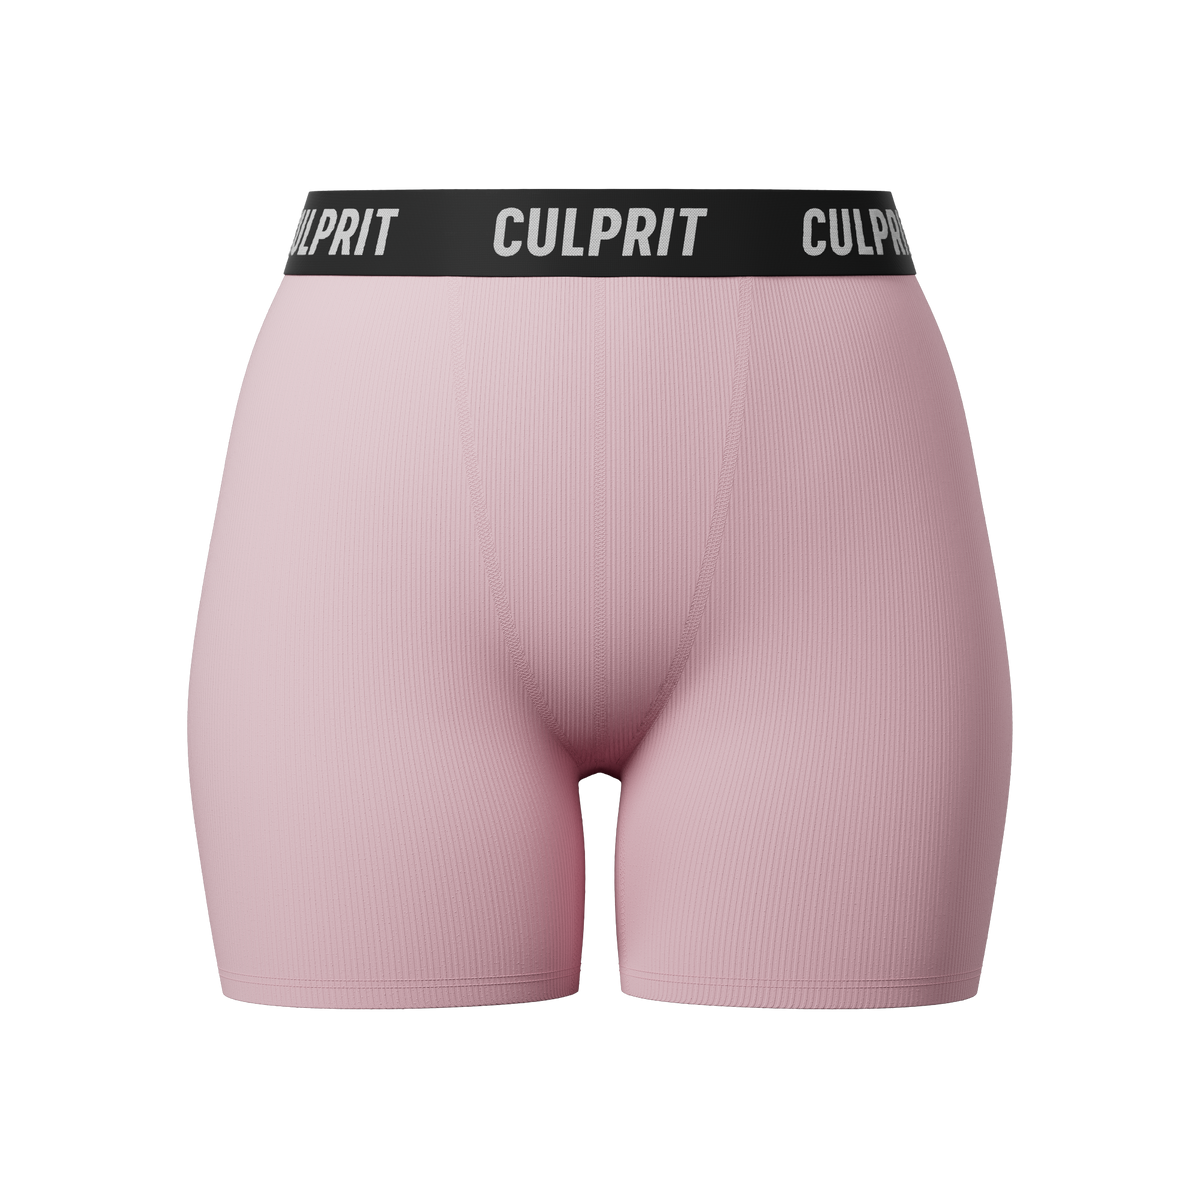 Culprit Underwear Woman Women Comfortable Sexy Girls Underwear